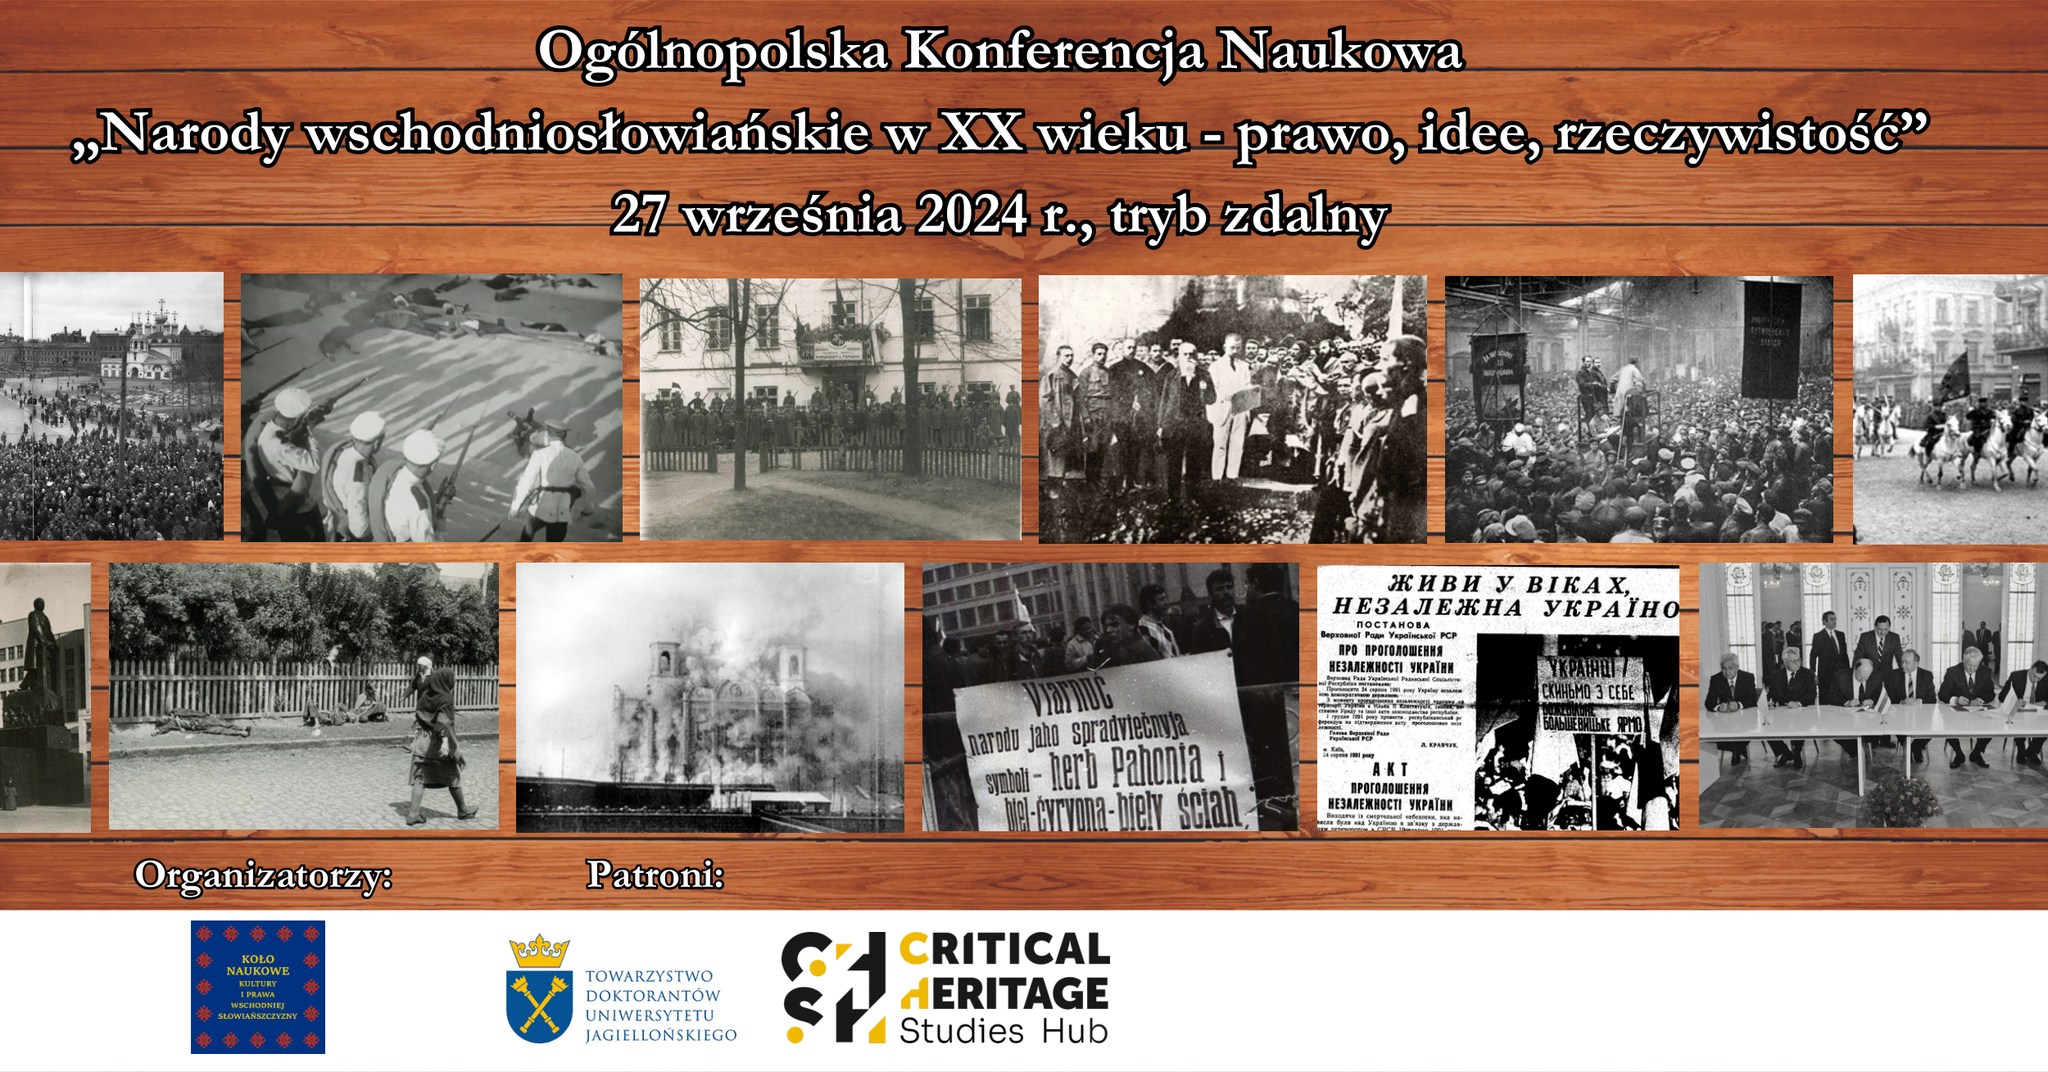 Ogólnopolska Konferencja Naukowa “Narody wschodniosłowiańskie w XX wieku - prawo, idee, rzeczywistość”